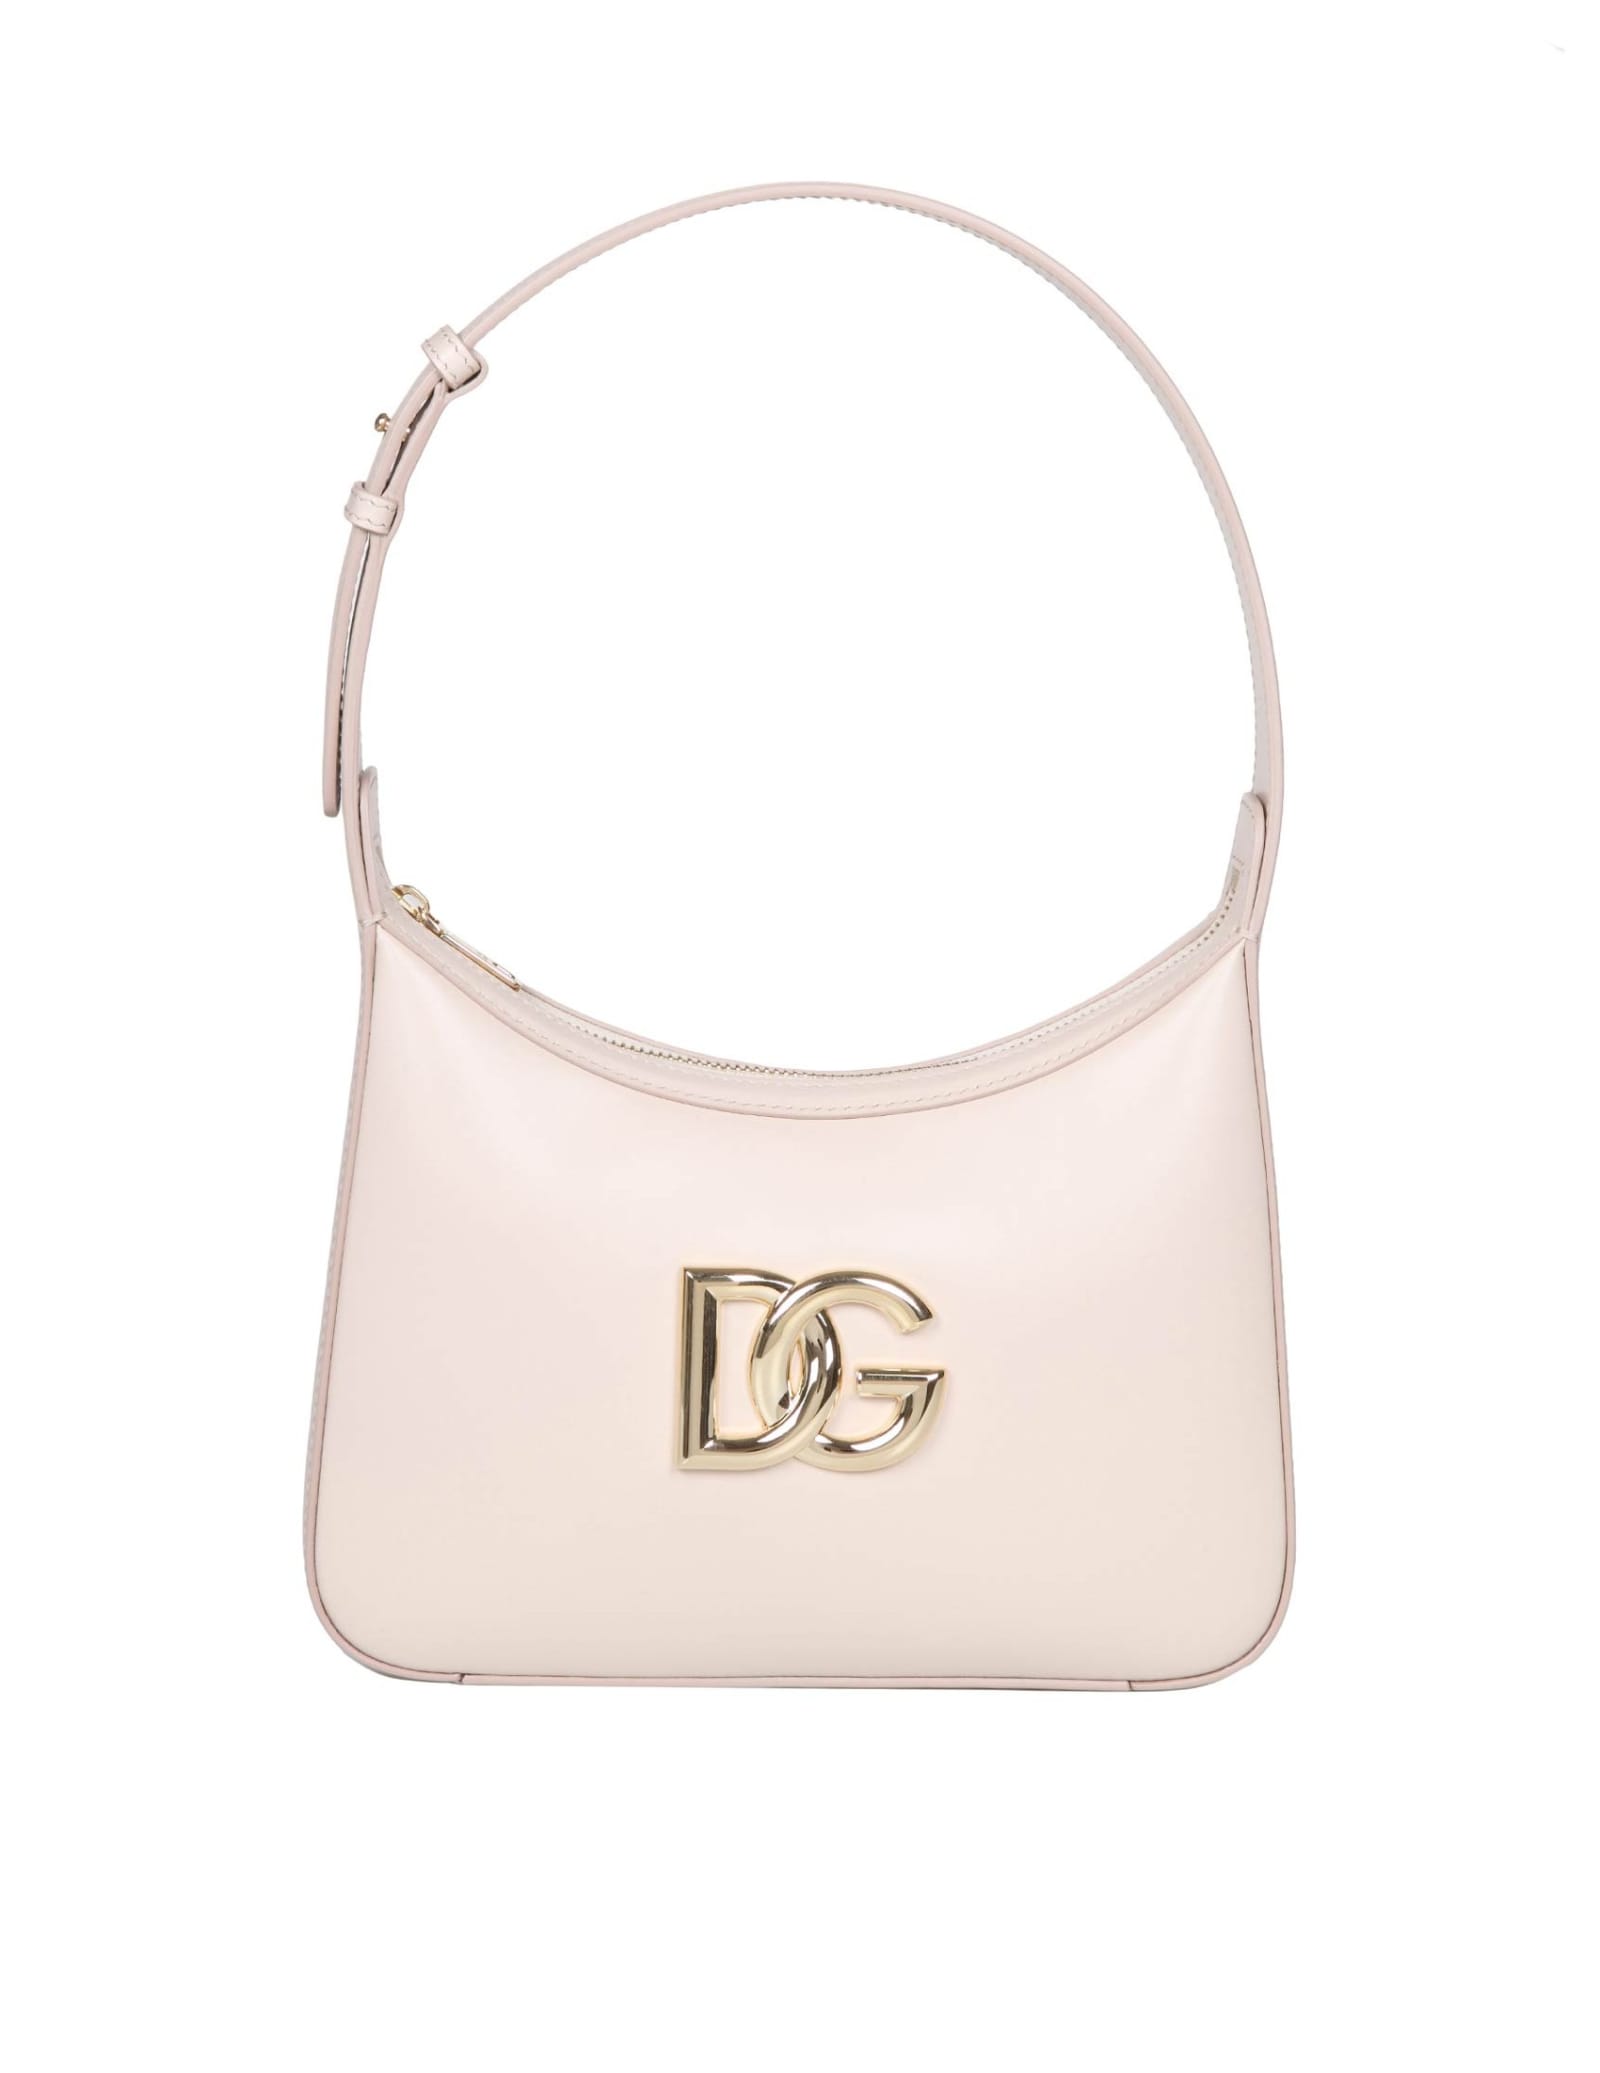 Dolce & Gabbana 3.5 Leather Shoulder Bag With Dg Logo In Rose Flesh